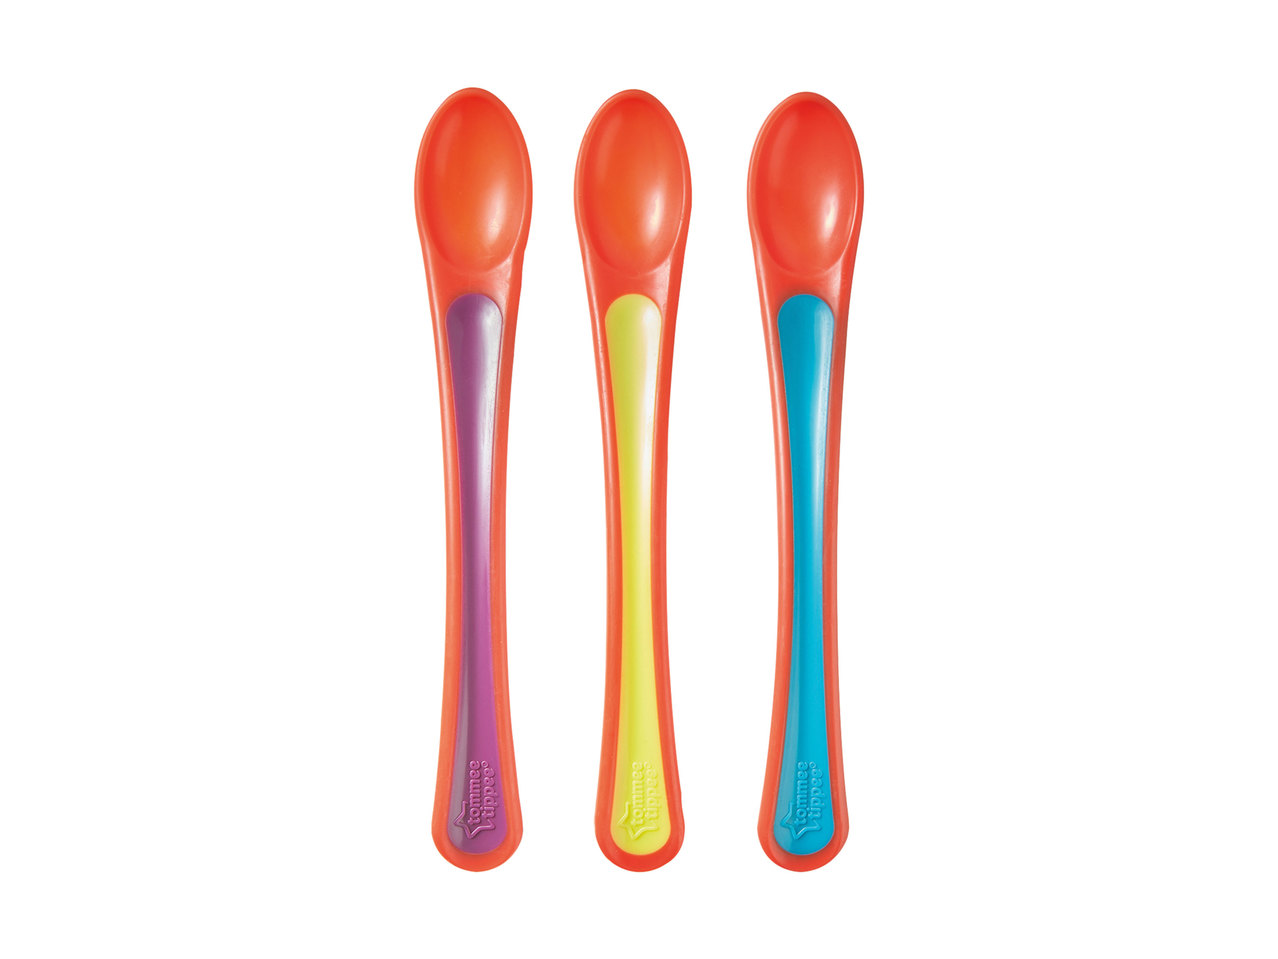 Tommee Tippee Heat-Sensing Spoons